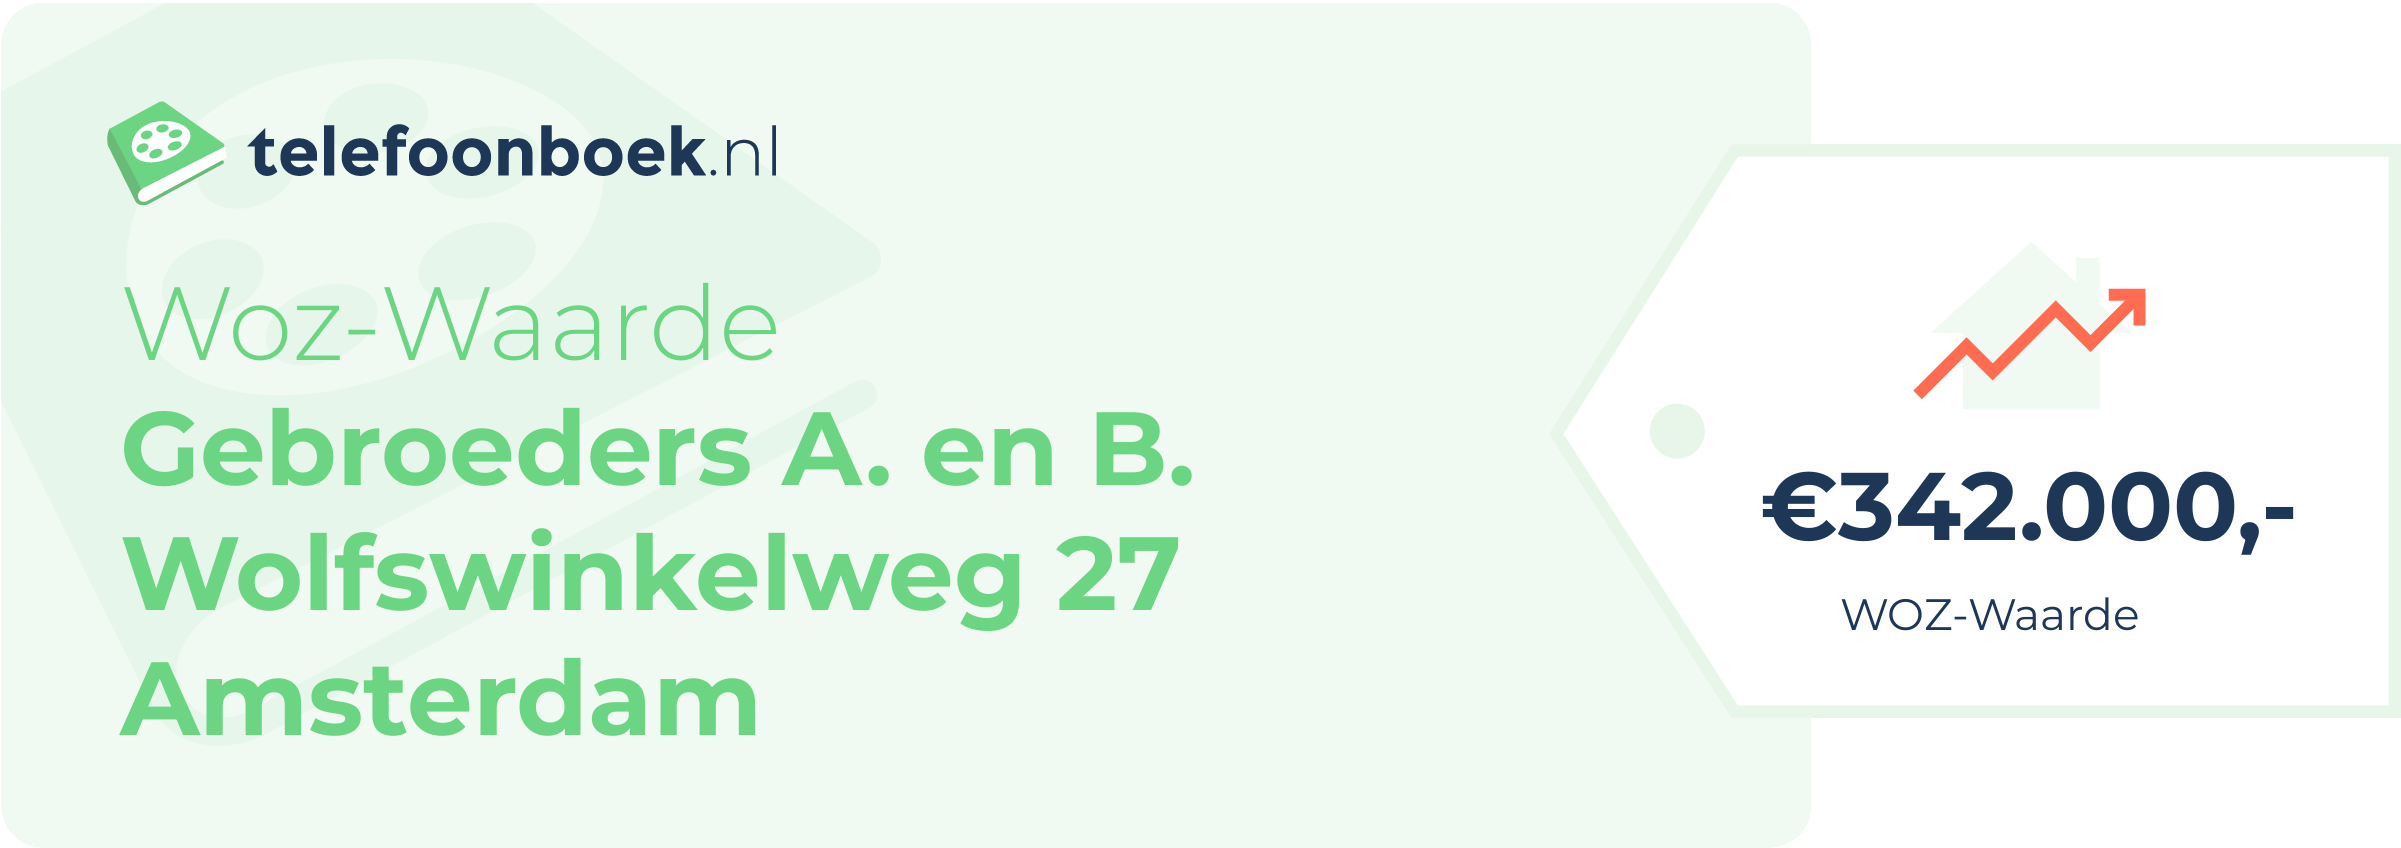 WOZ-waarde Gebroeders A. En B. Wolfswinkelweg 27 Amsterdam